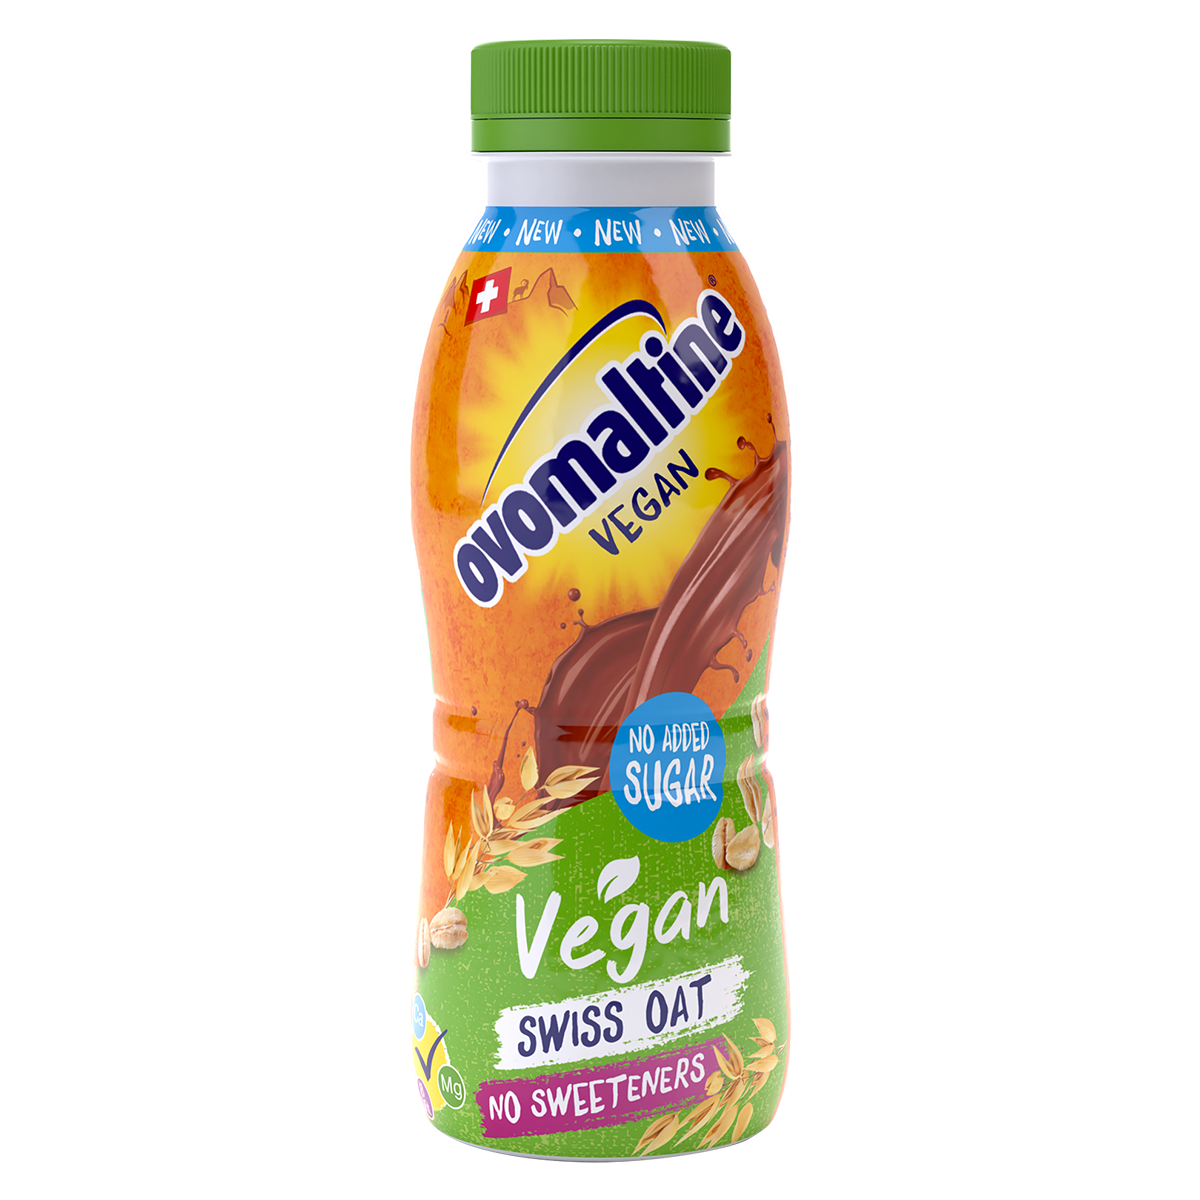  Ovo Vegan Drink - Vegane Energie für Unterwegs